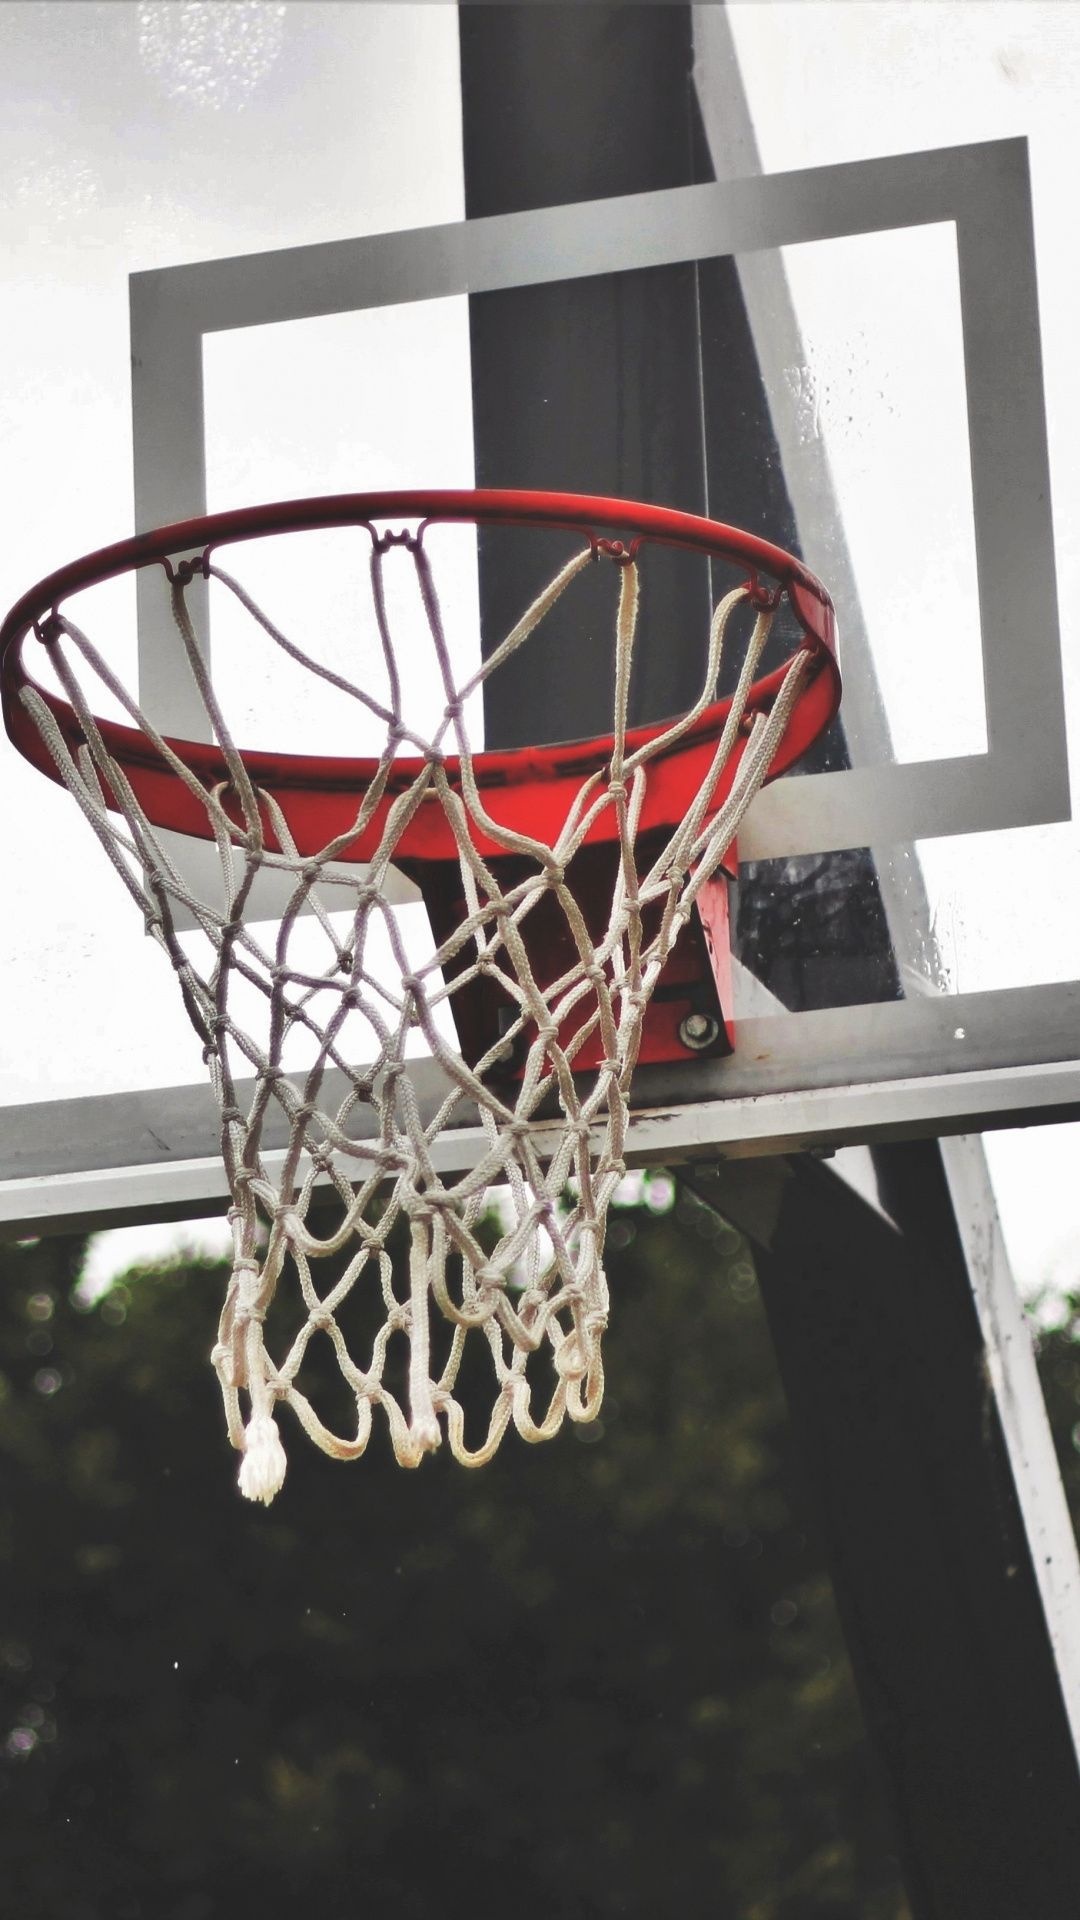 Streetball: Street basketball basket, Downtown urban court. 1080x1920 Full HD Wallpaper.